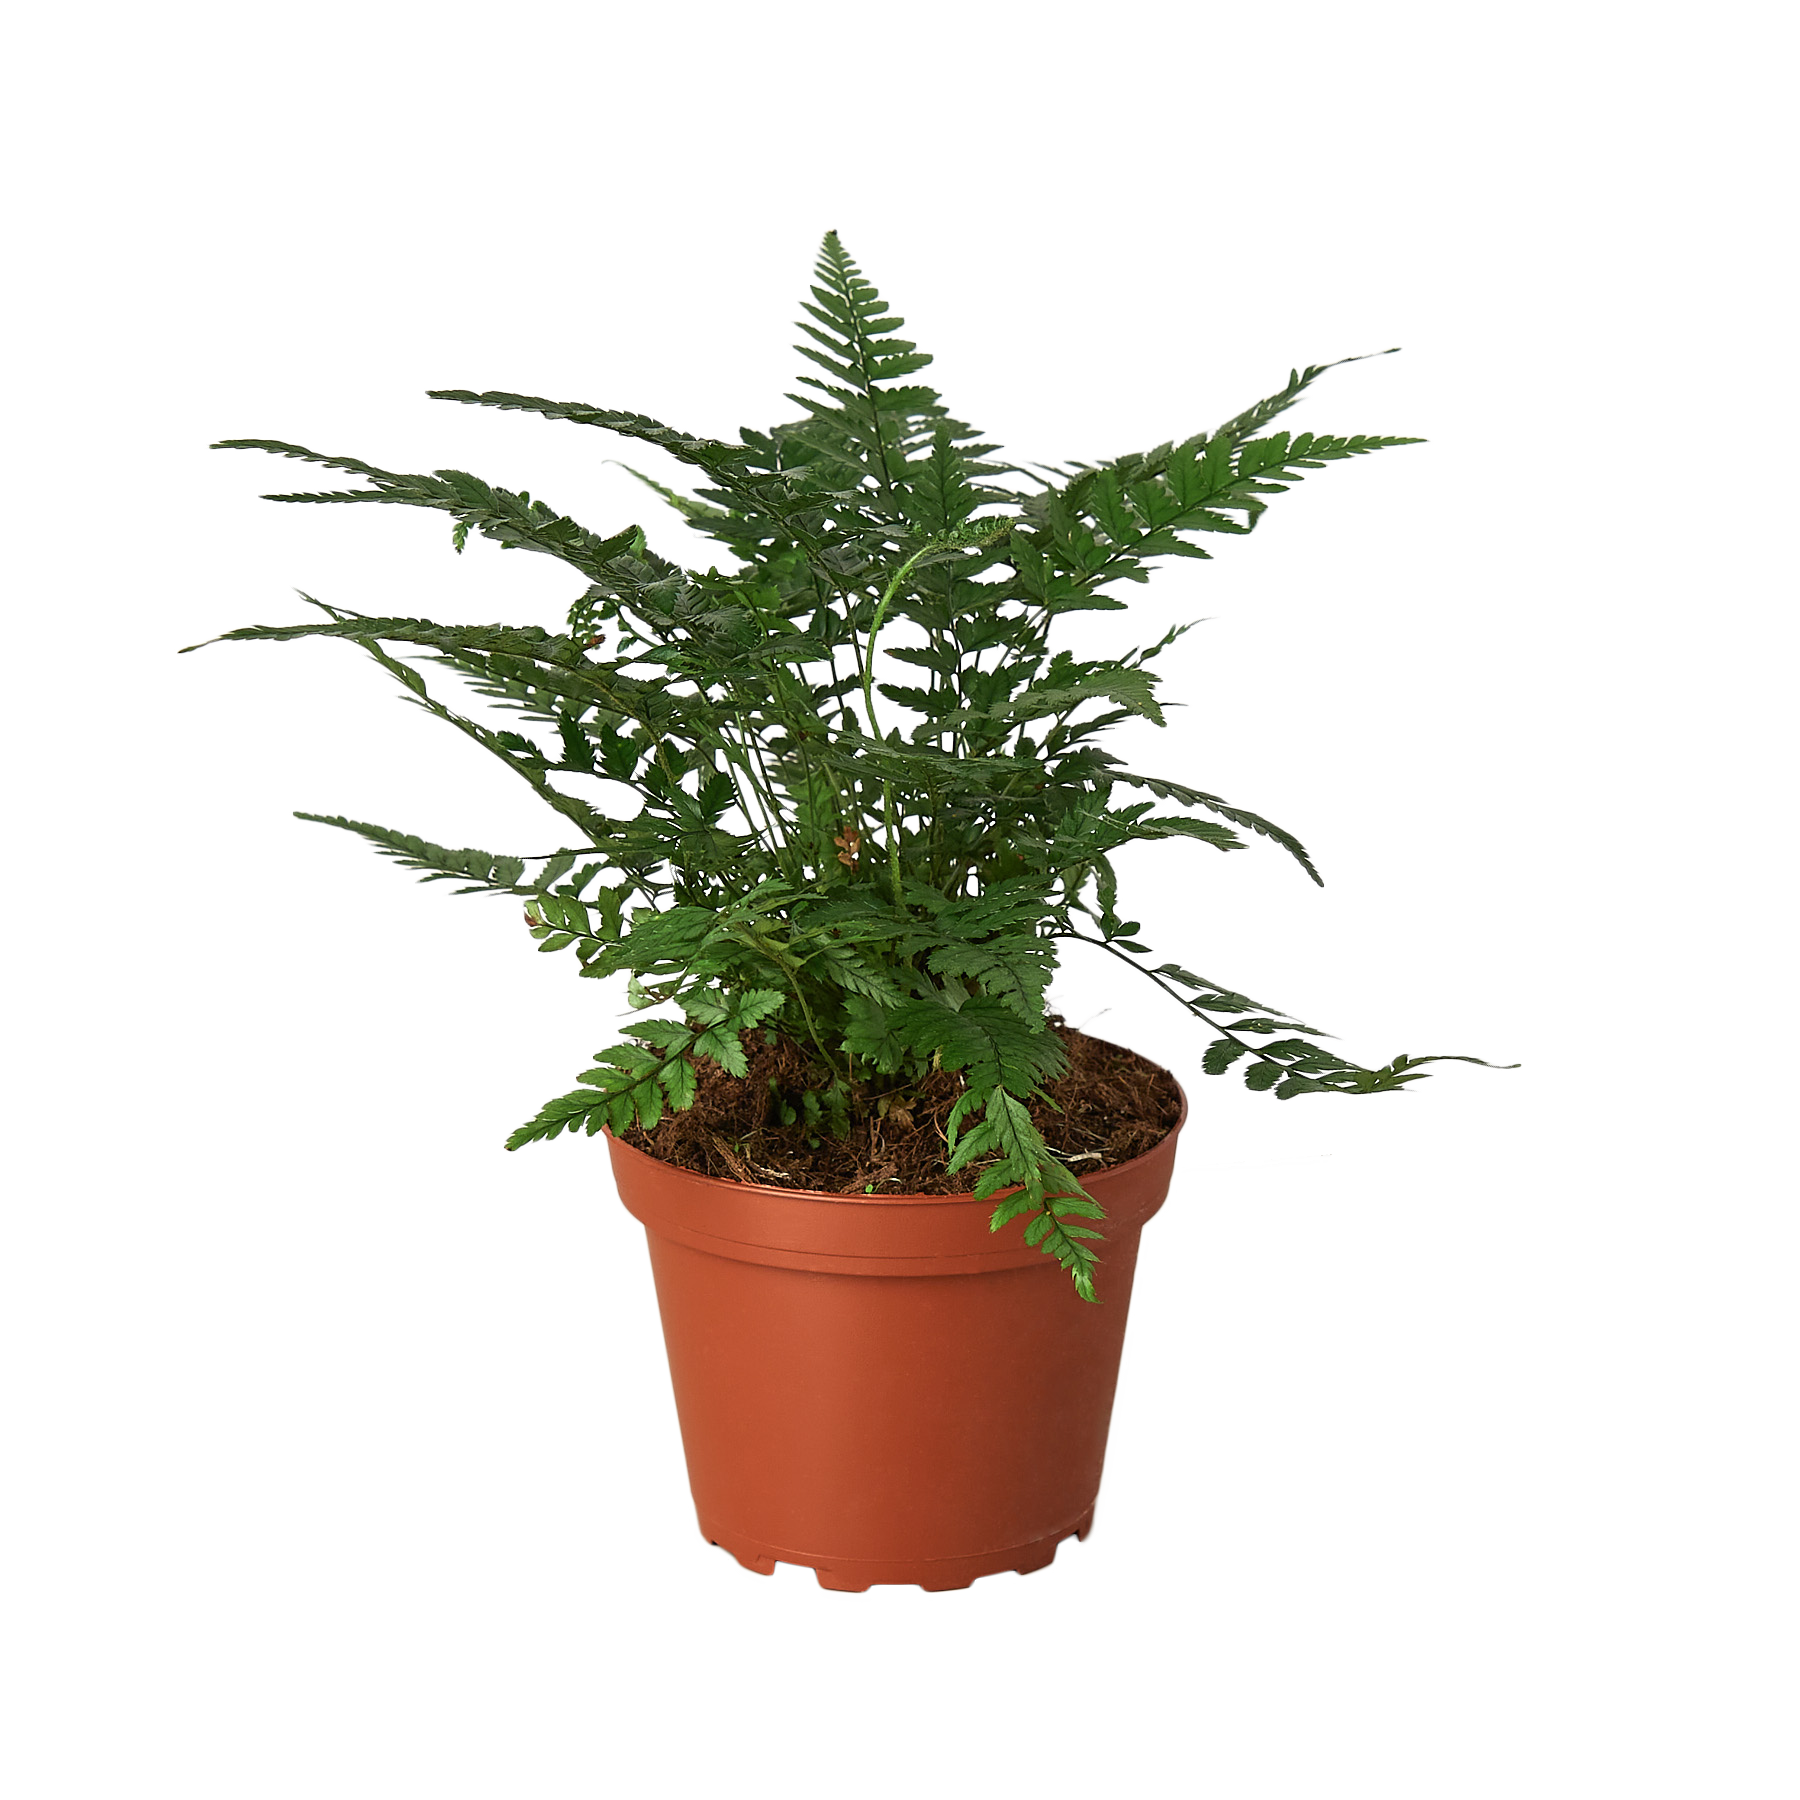 A fern plant in a pot at a garden center.